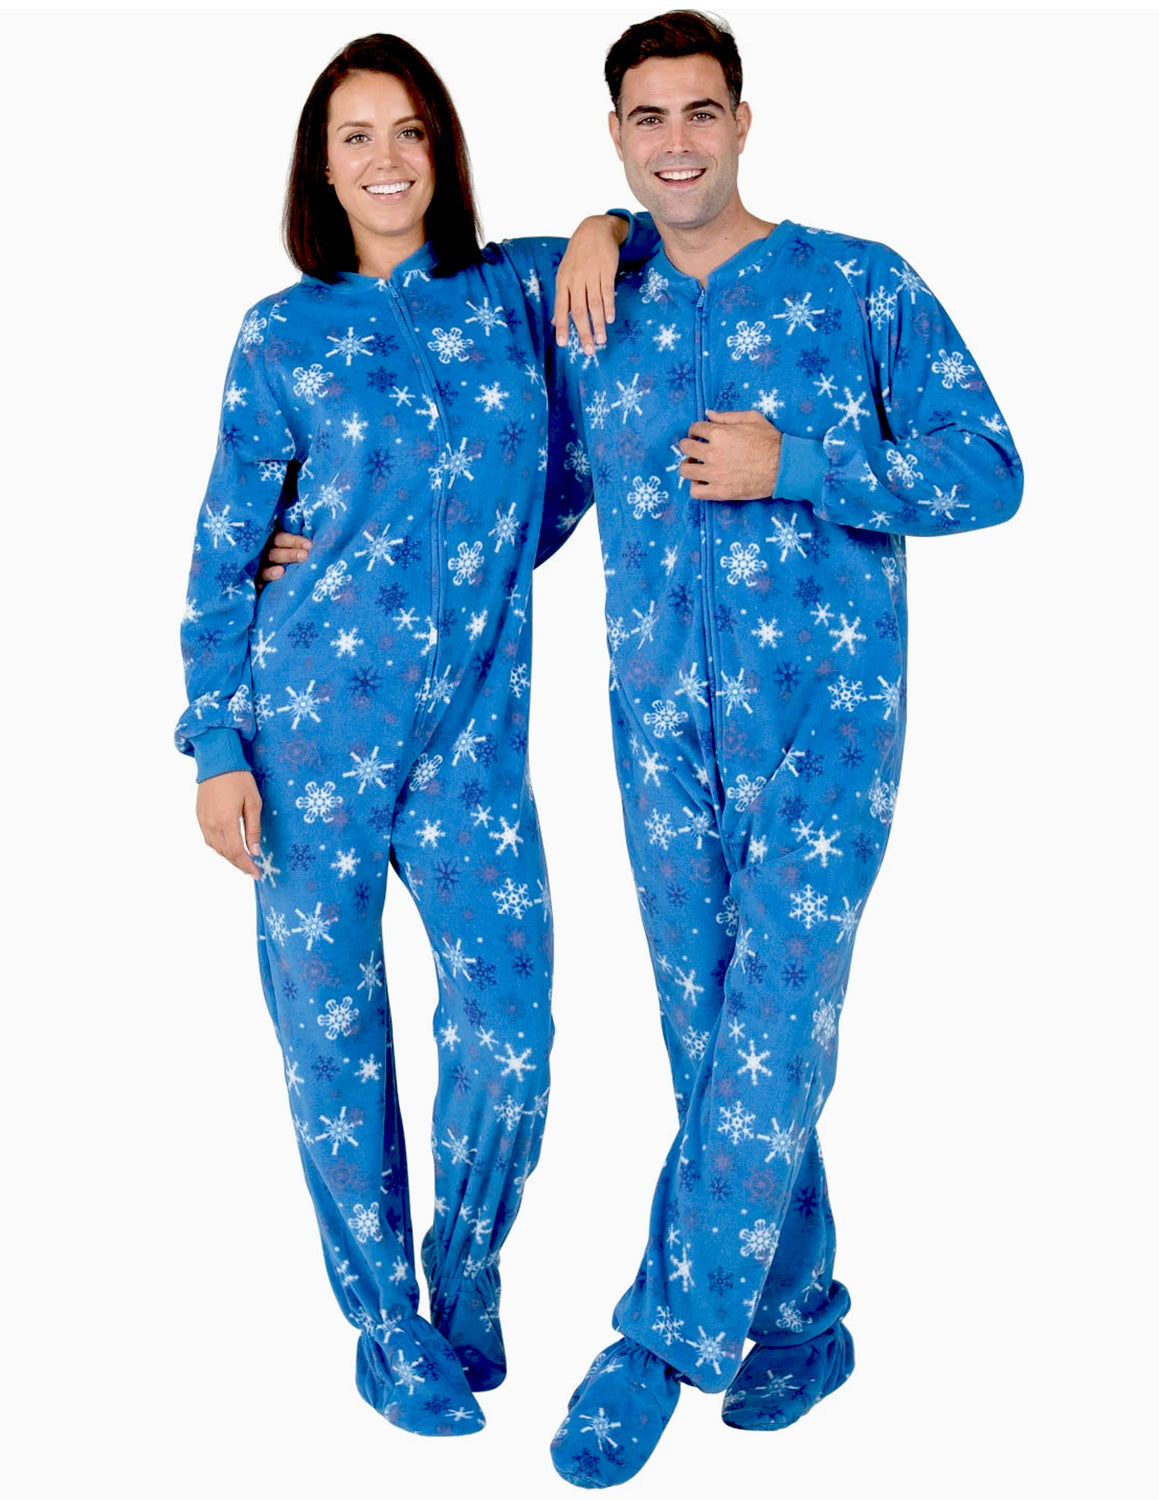 Adult Onesie Pajamas & Onesies for Adults